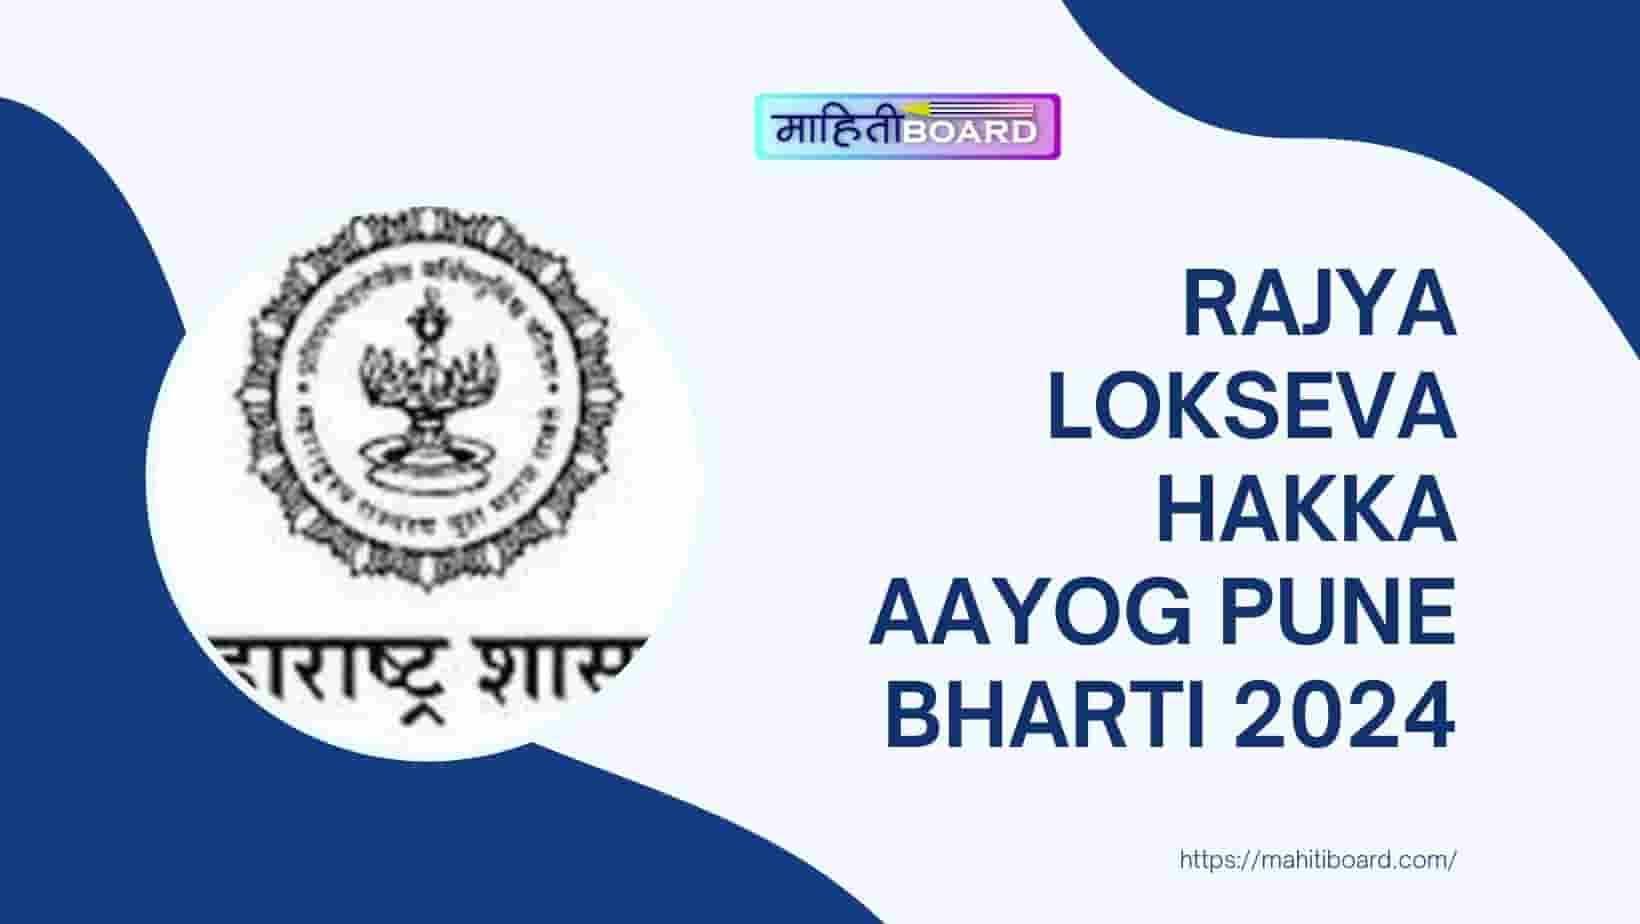 Rajya Lokseva Hakka Aayog Pune Bharti 2024